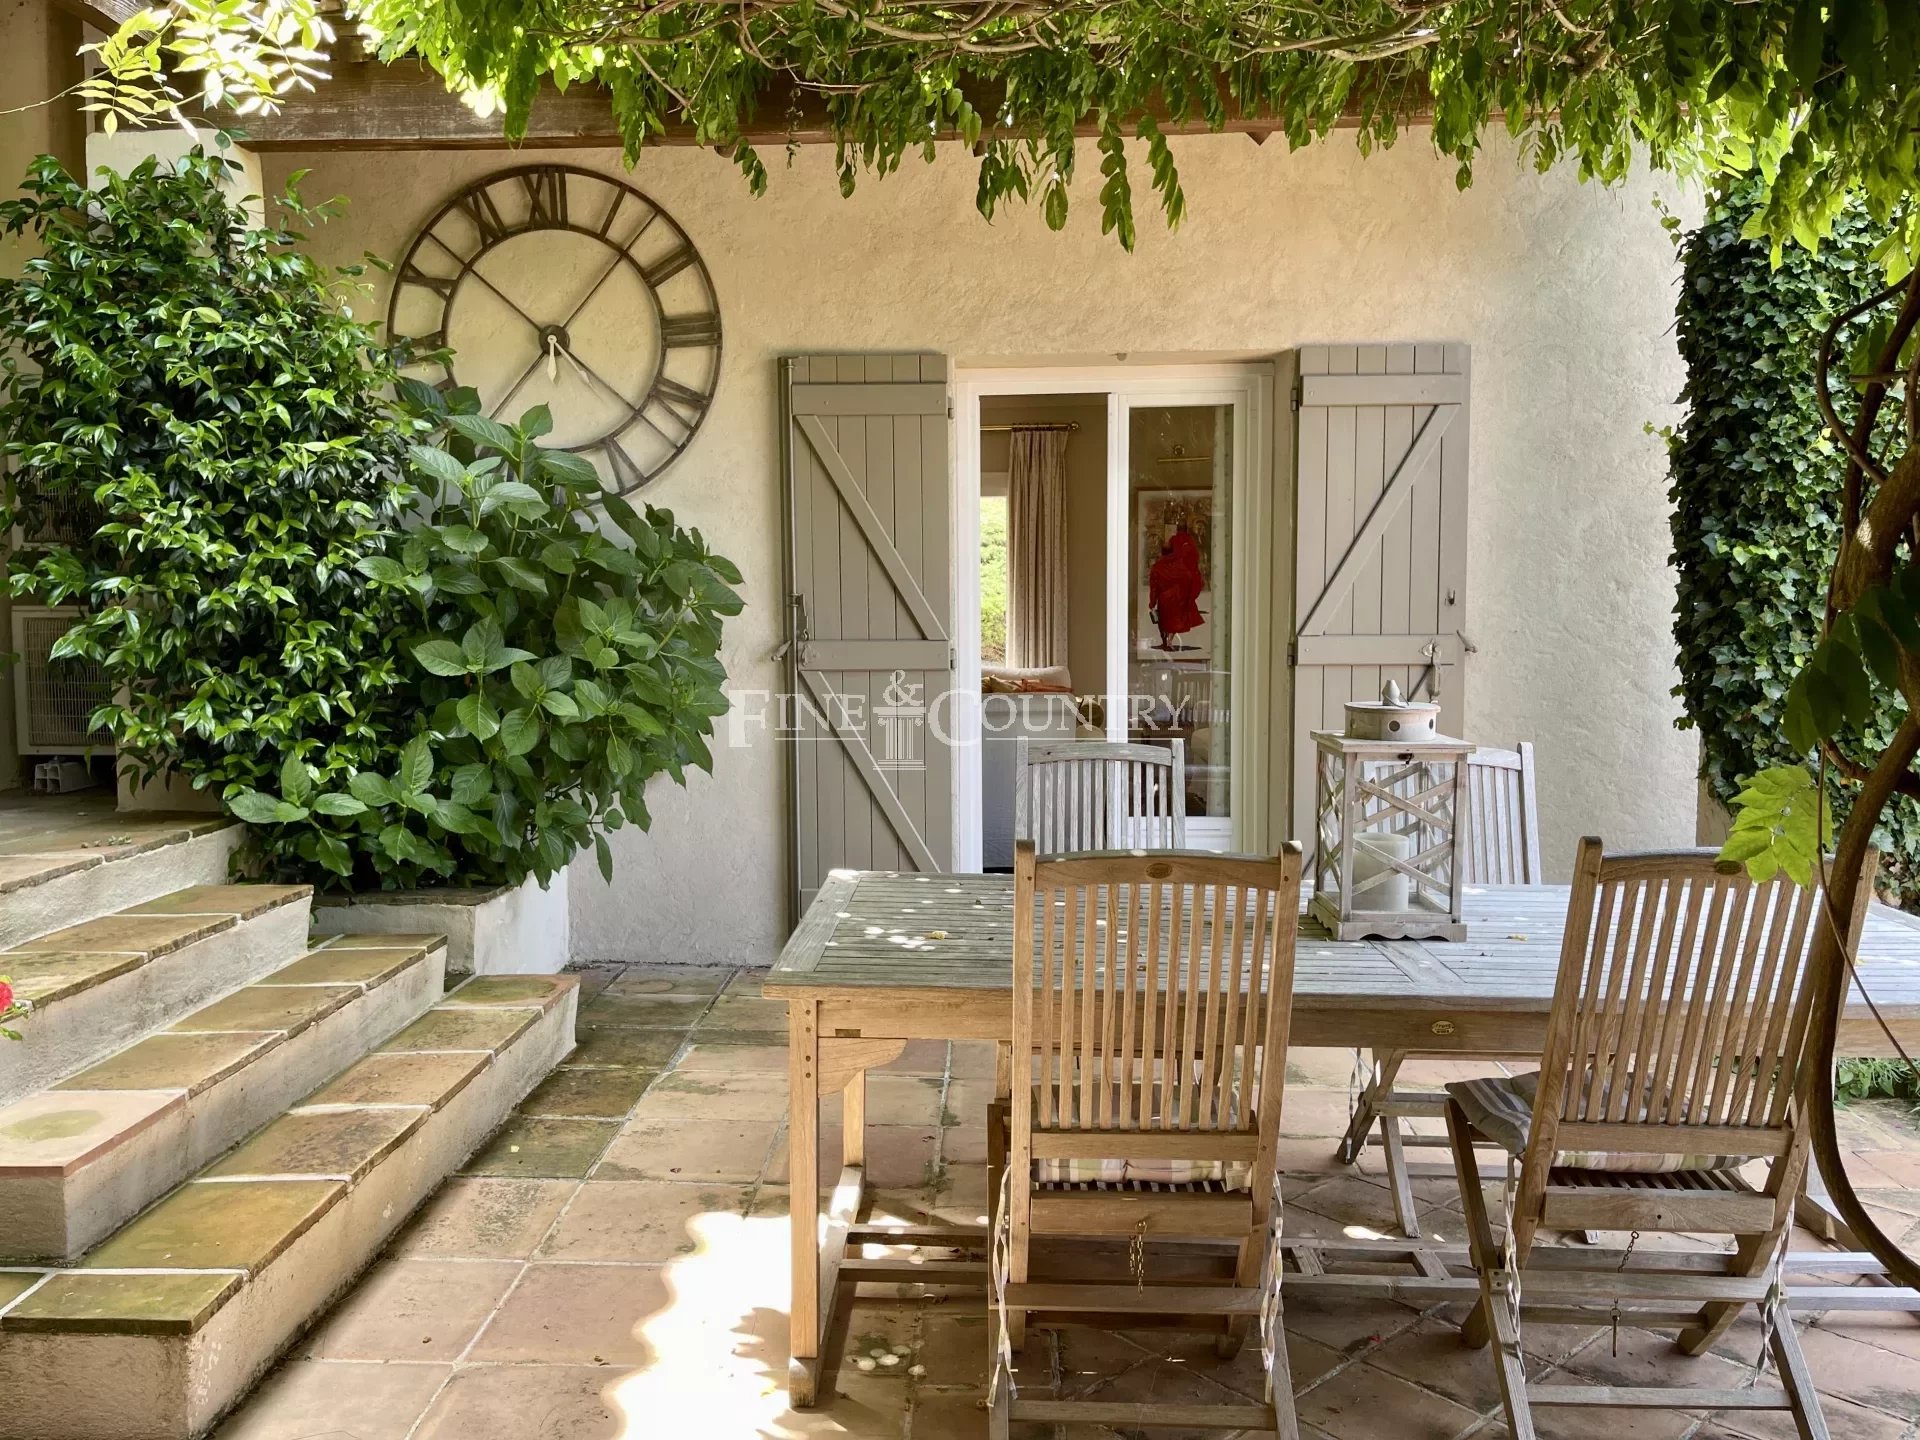 Villa For Sale in La Garde Freinet